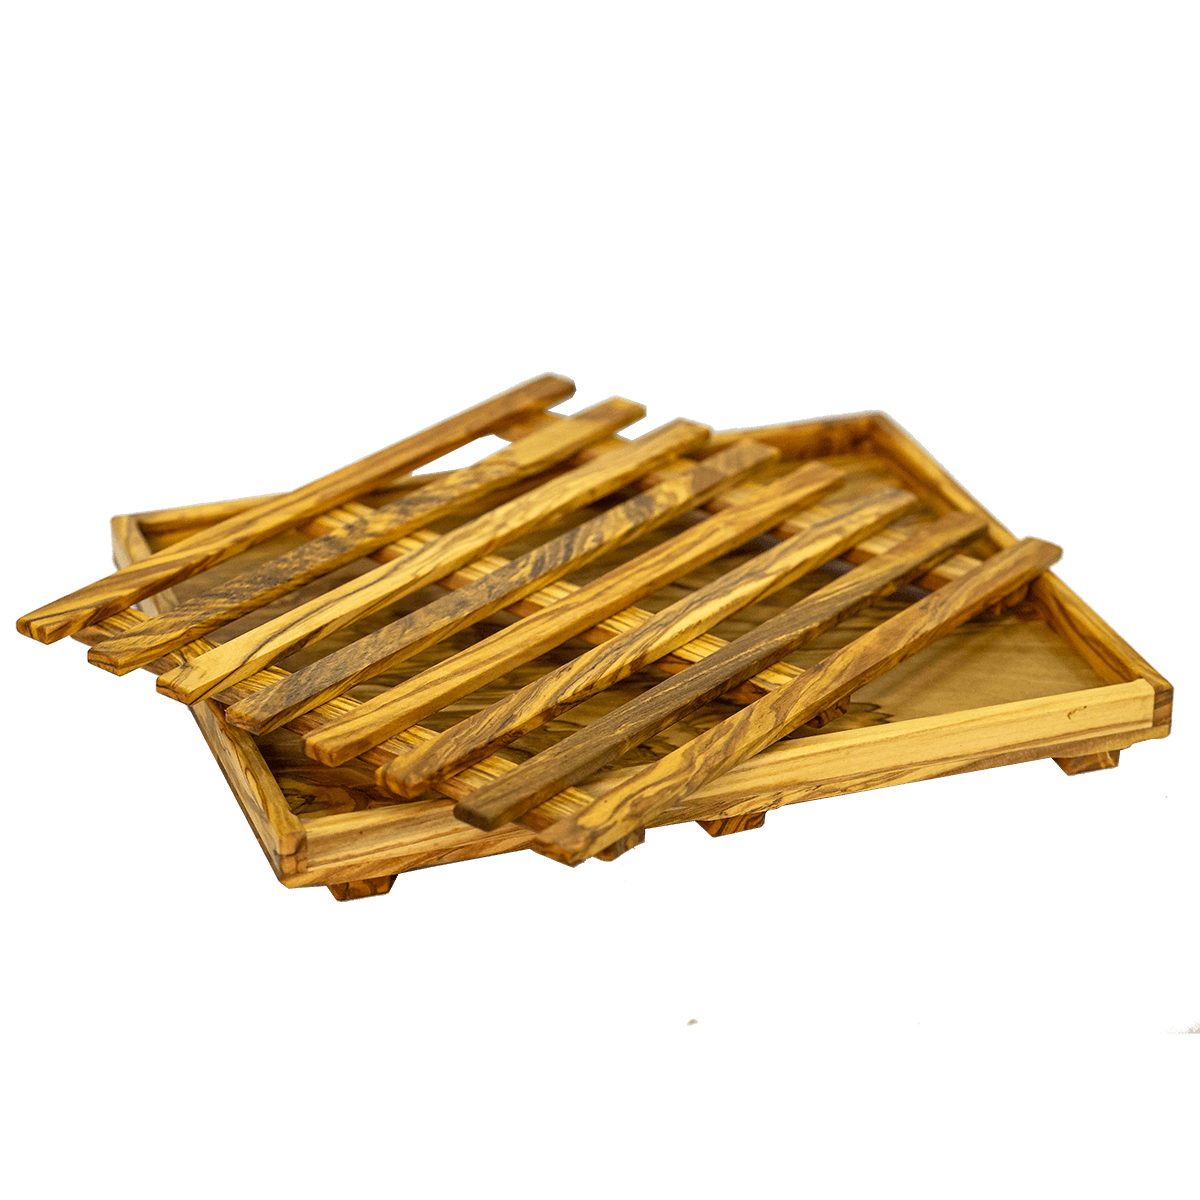 Tagliapane in legno di olivo a prezzo conveniente in offerta